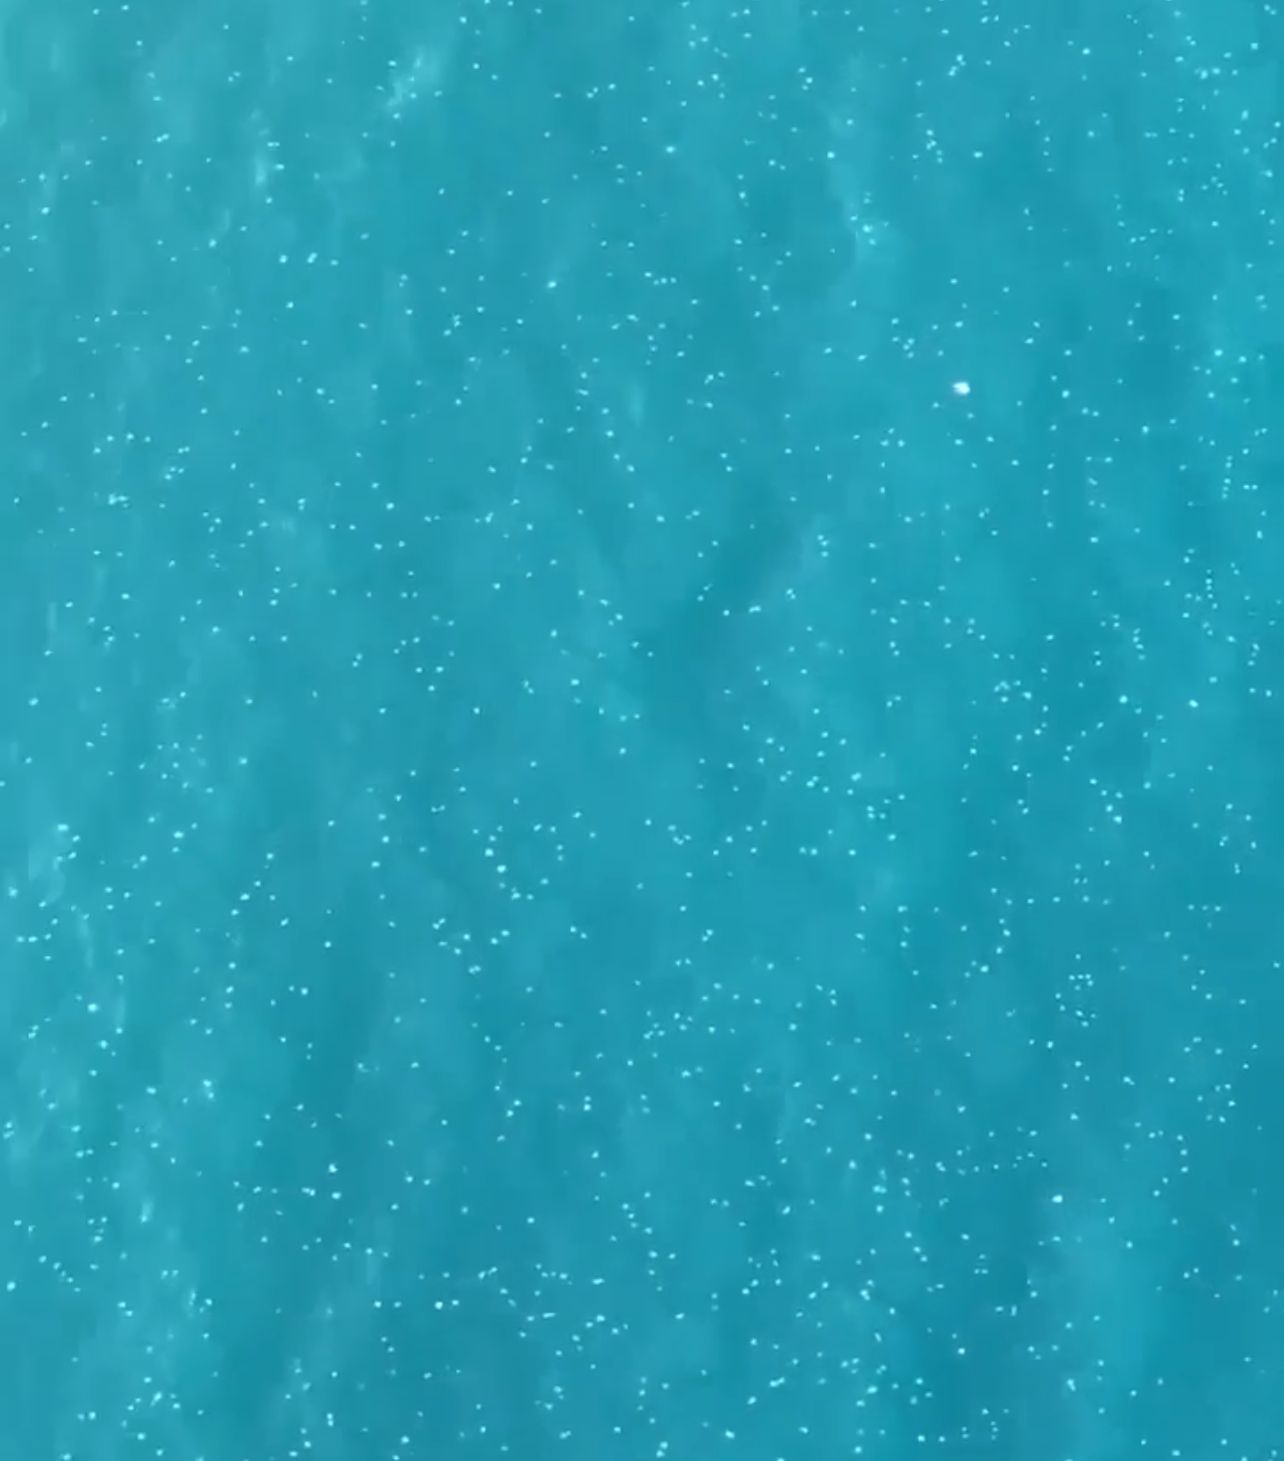 En fin de semaine dernière, sur la plage de la ville côtière du sud de Tyr, des dizaines de nageurs ont été piqués par des méduses (Photo, Capture d'écran).